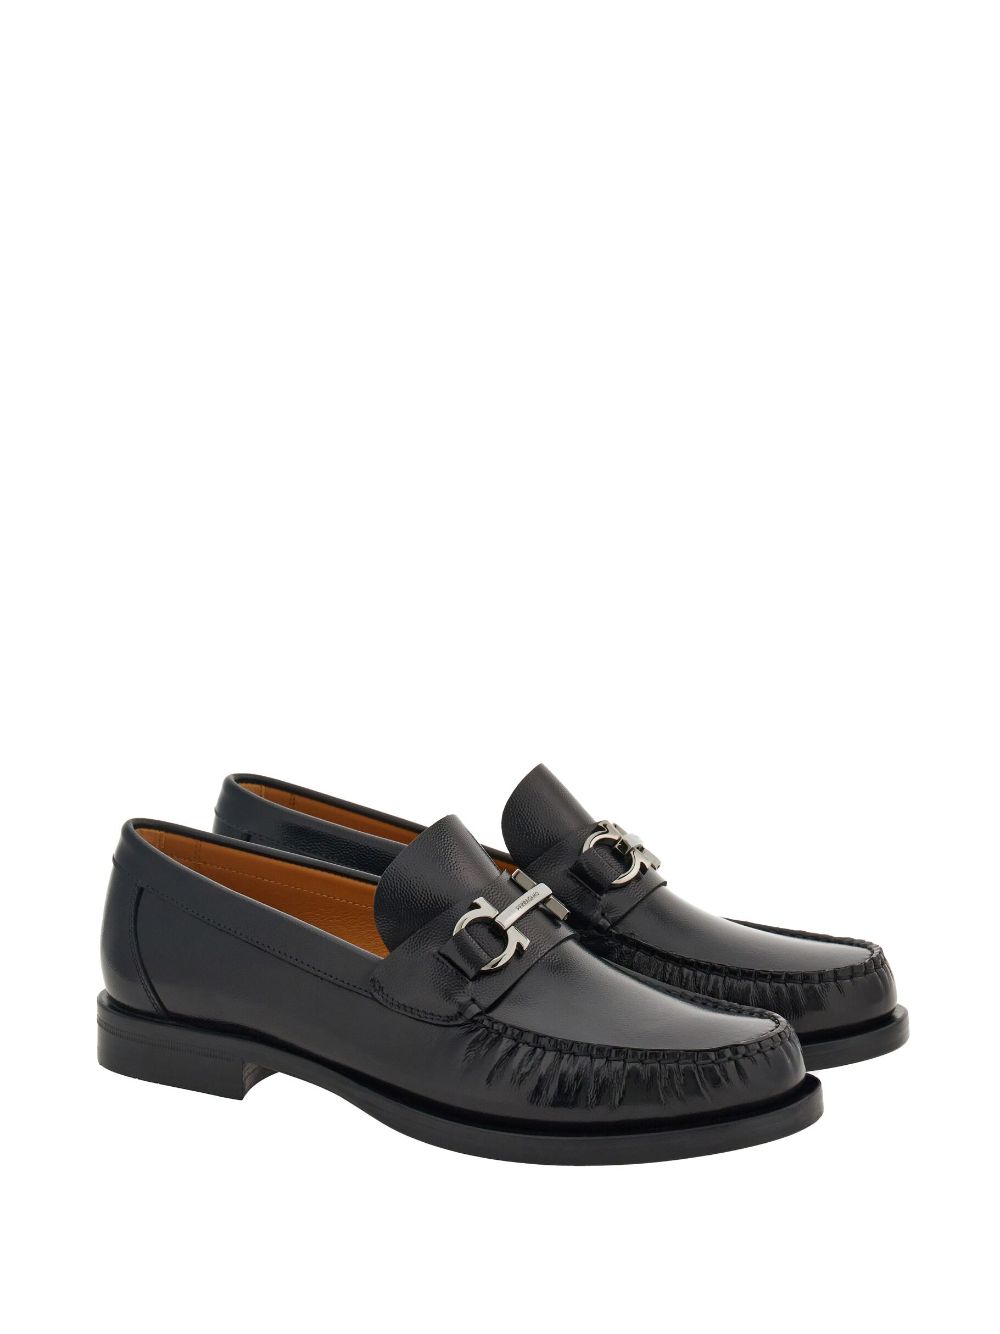 FERRAGAMO Black Gancini Hook Leather Loafers for Men